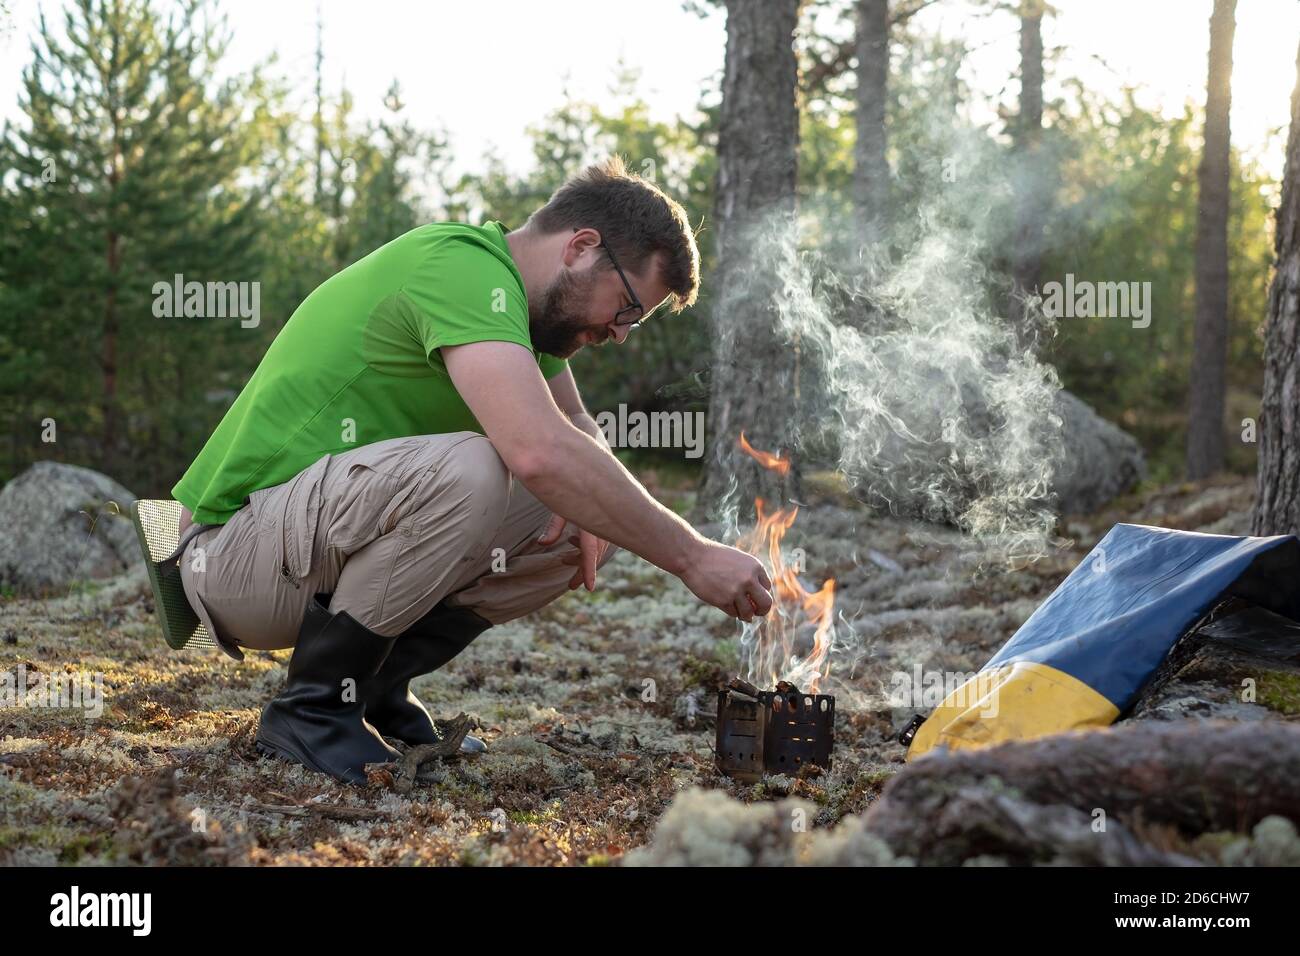 El hombre en la ropa de senderismo calienta un quemador de metal prefabricado con madera, para cocinar, en el bosque, en un campamento. Descanso activo. Foto de stock